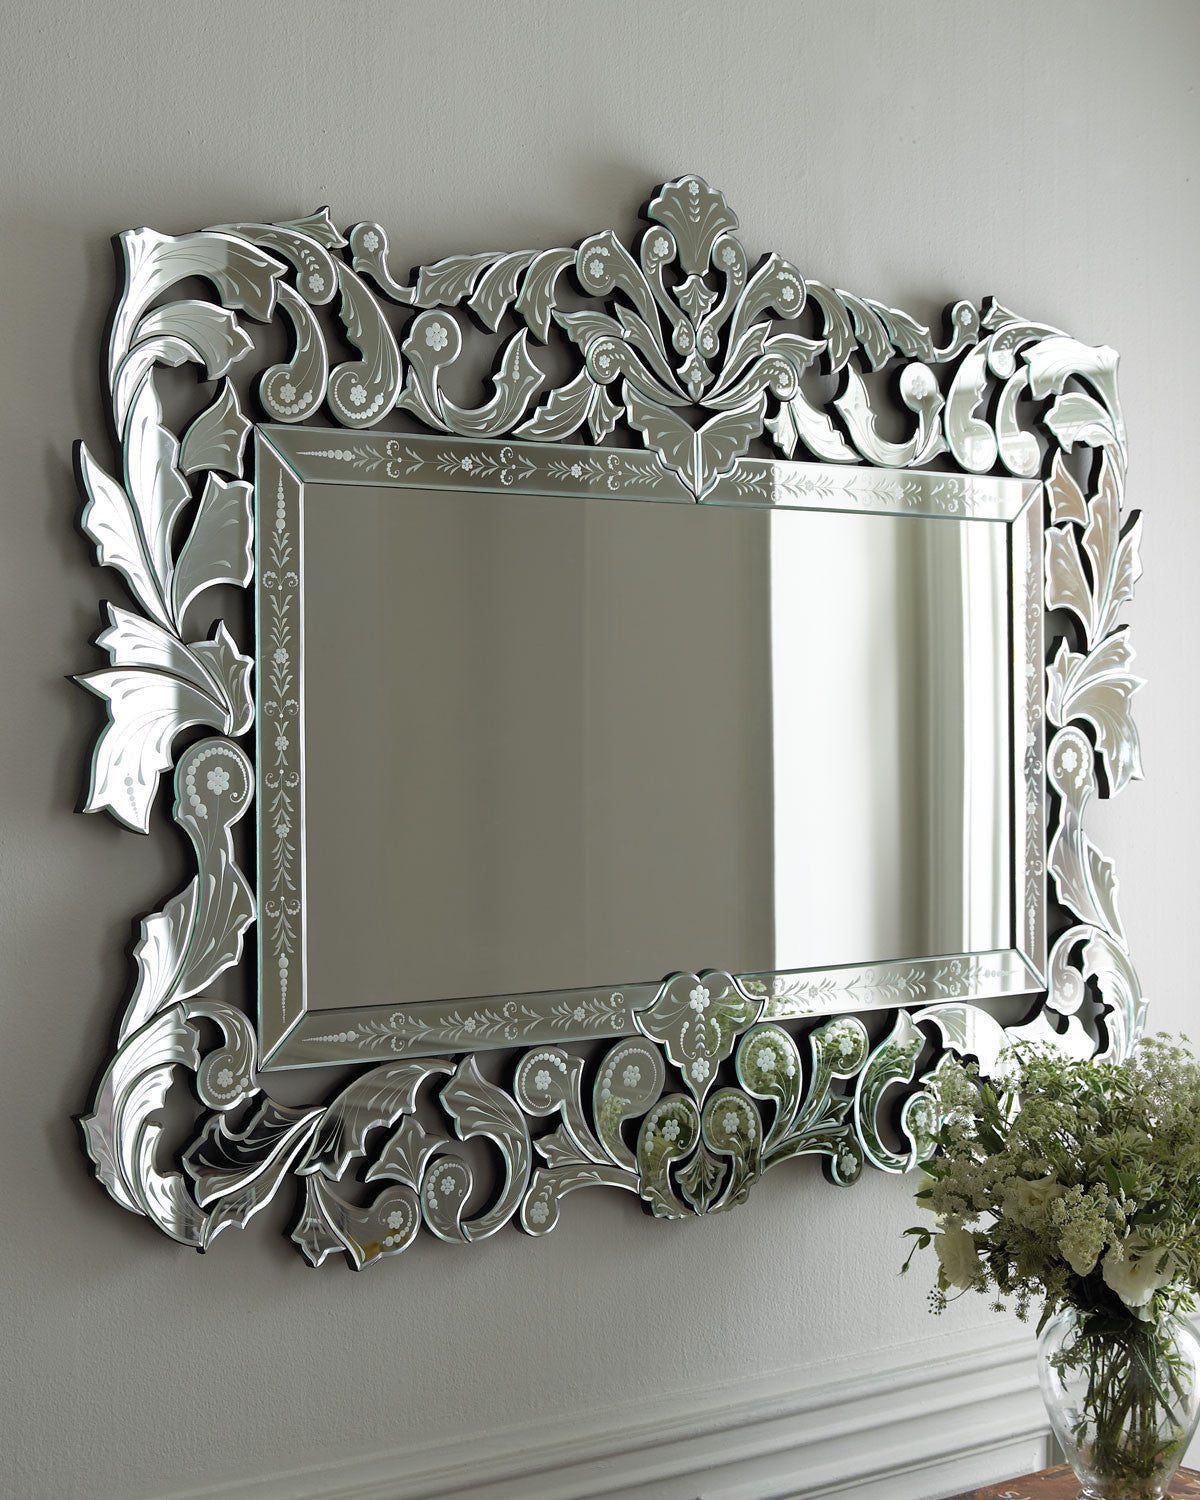 Прямоугольное зеркало в венецианском стиле "Фэйбл" (в интерьере)